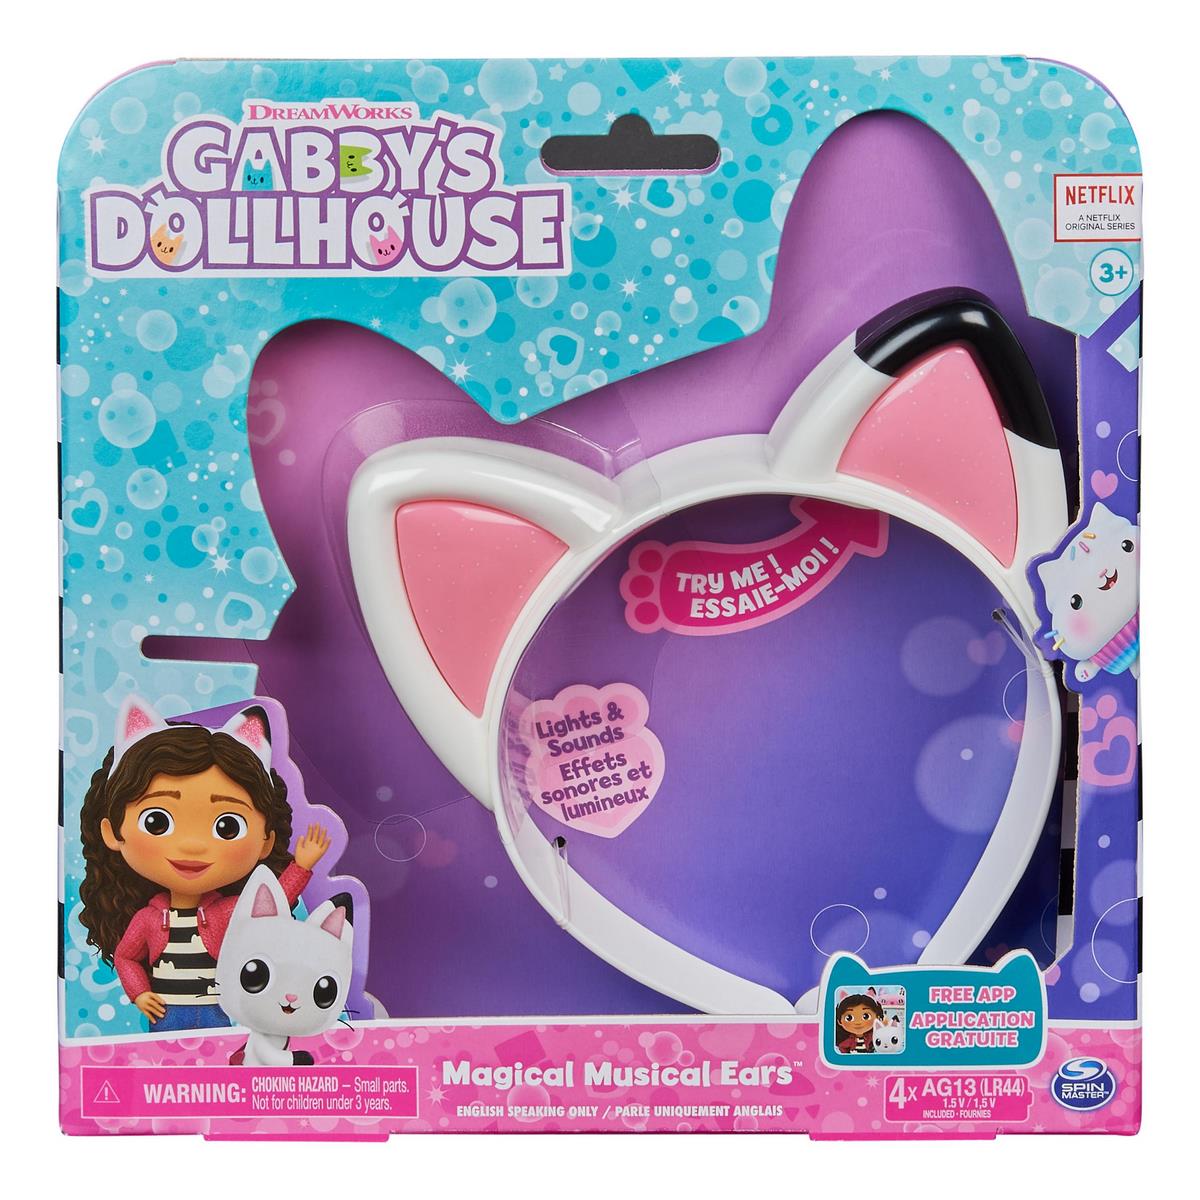 Gabby's Dollhouse - La maison magique - Cadeaux Chez Guy